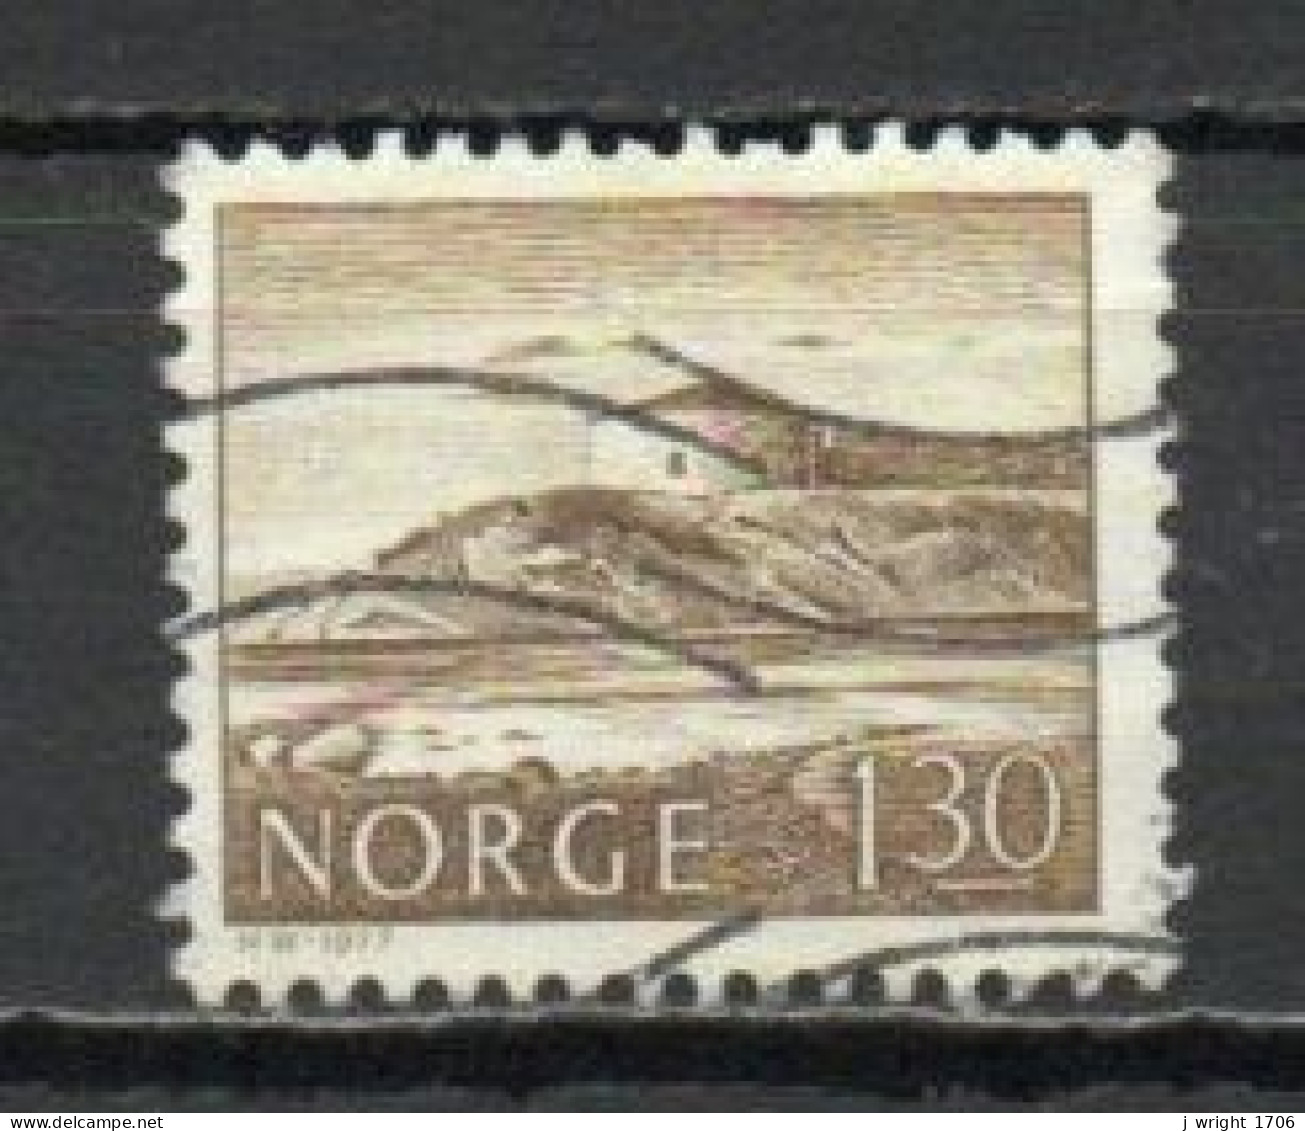 Norway, 1977, Buildings/Steinviksholm Fortress,, 1.30Kr, USED - Used Stamps